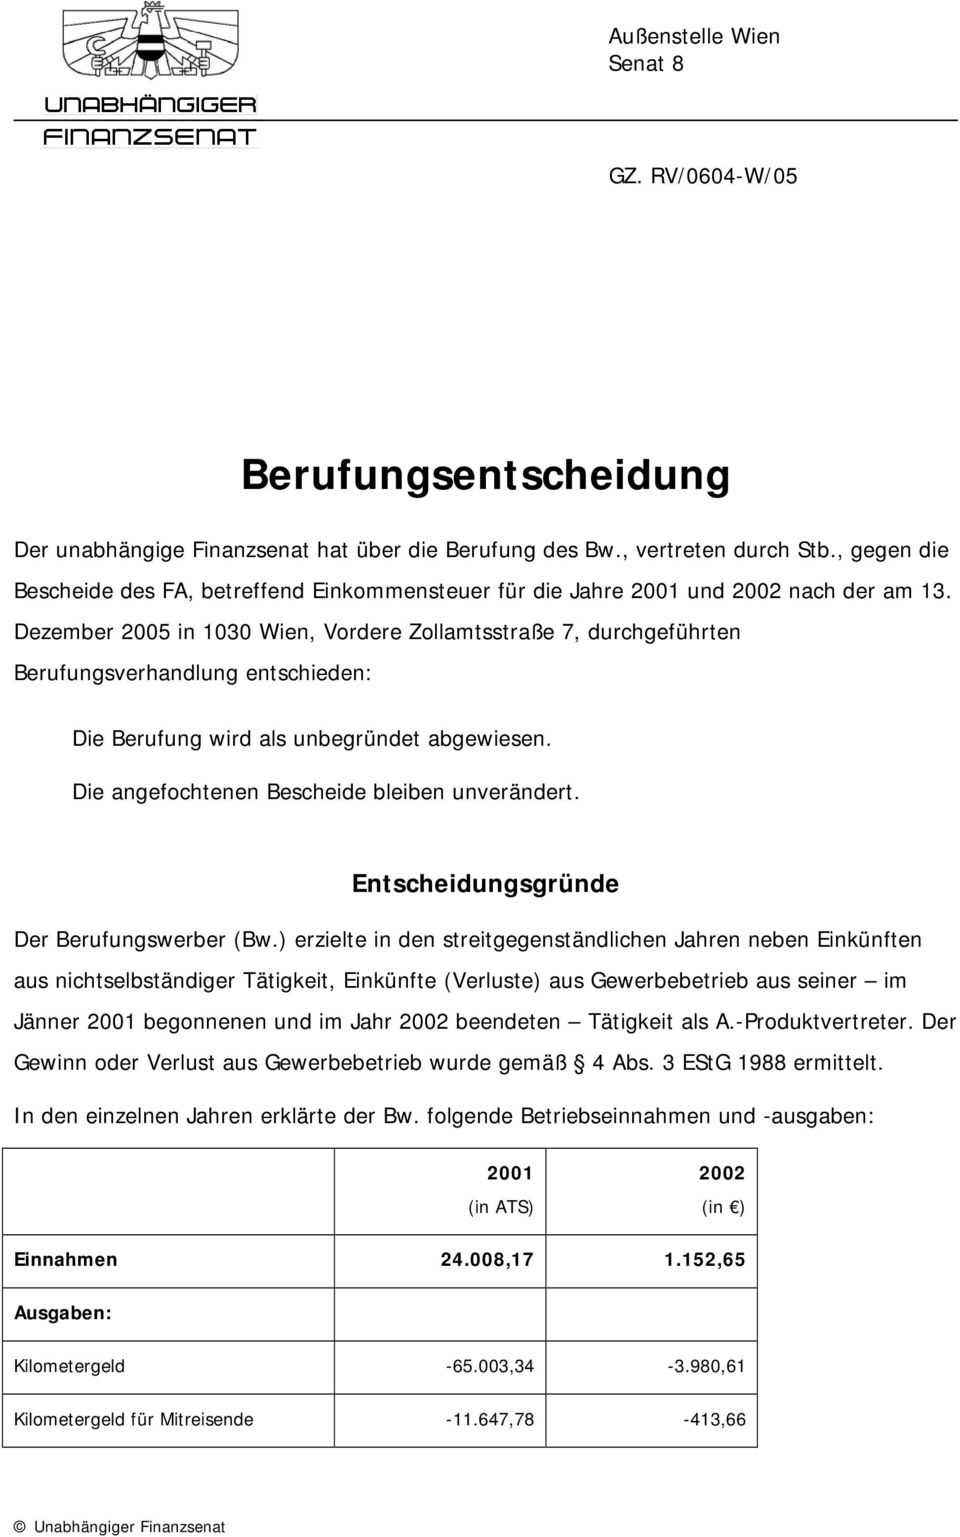 Dezember 2005 in 1030 Wien, Vordere Zollamtsstraße 7, durchgeführten Berufungsverhandlung entschieden: Die Berufung wird als unbegründet abgewiesen. Die angefochtenen Bescheide bleiben unverändert.